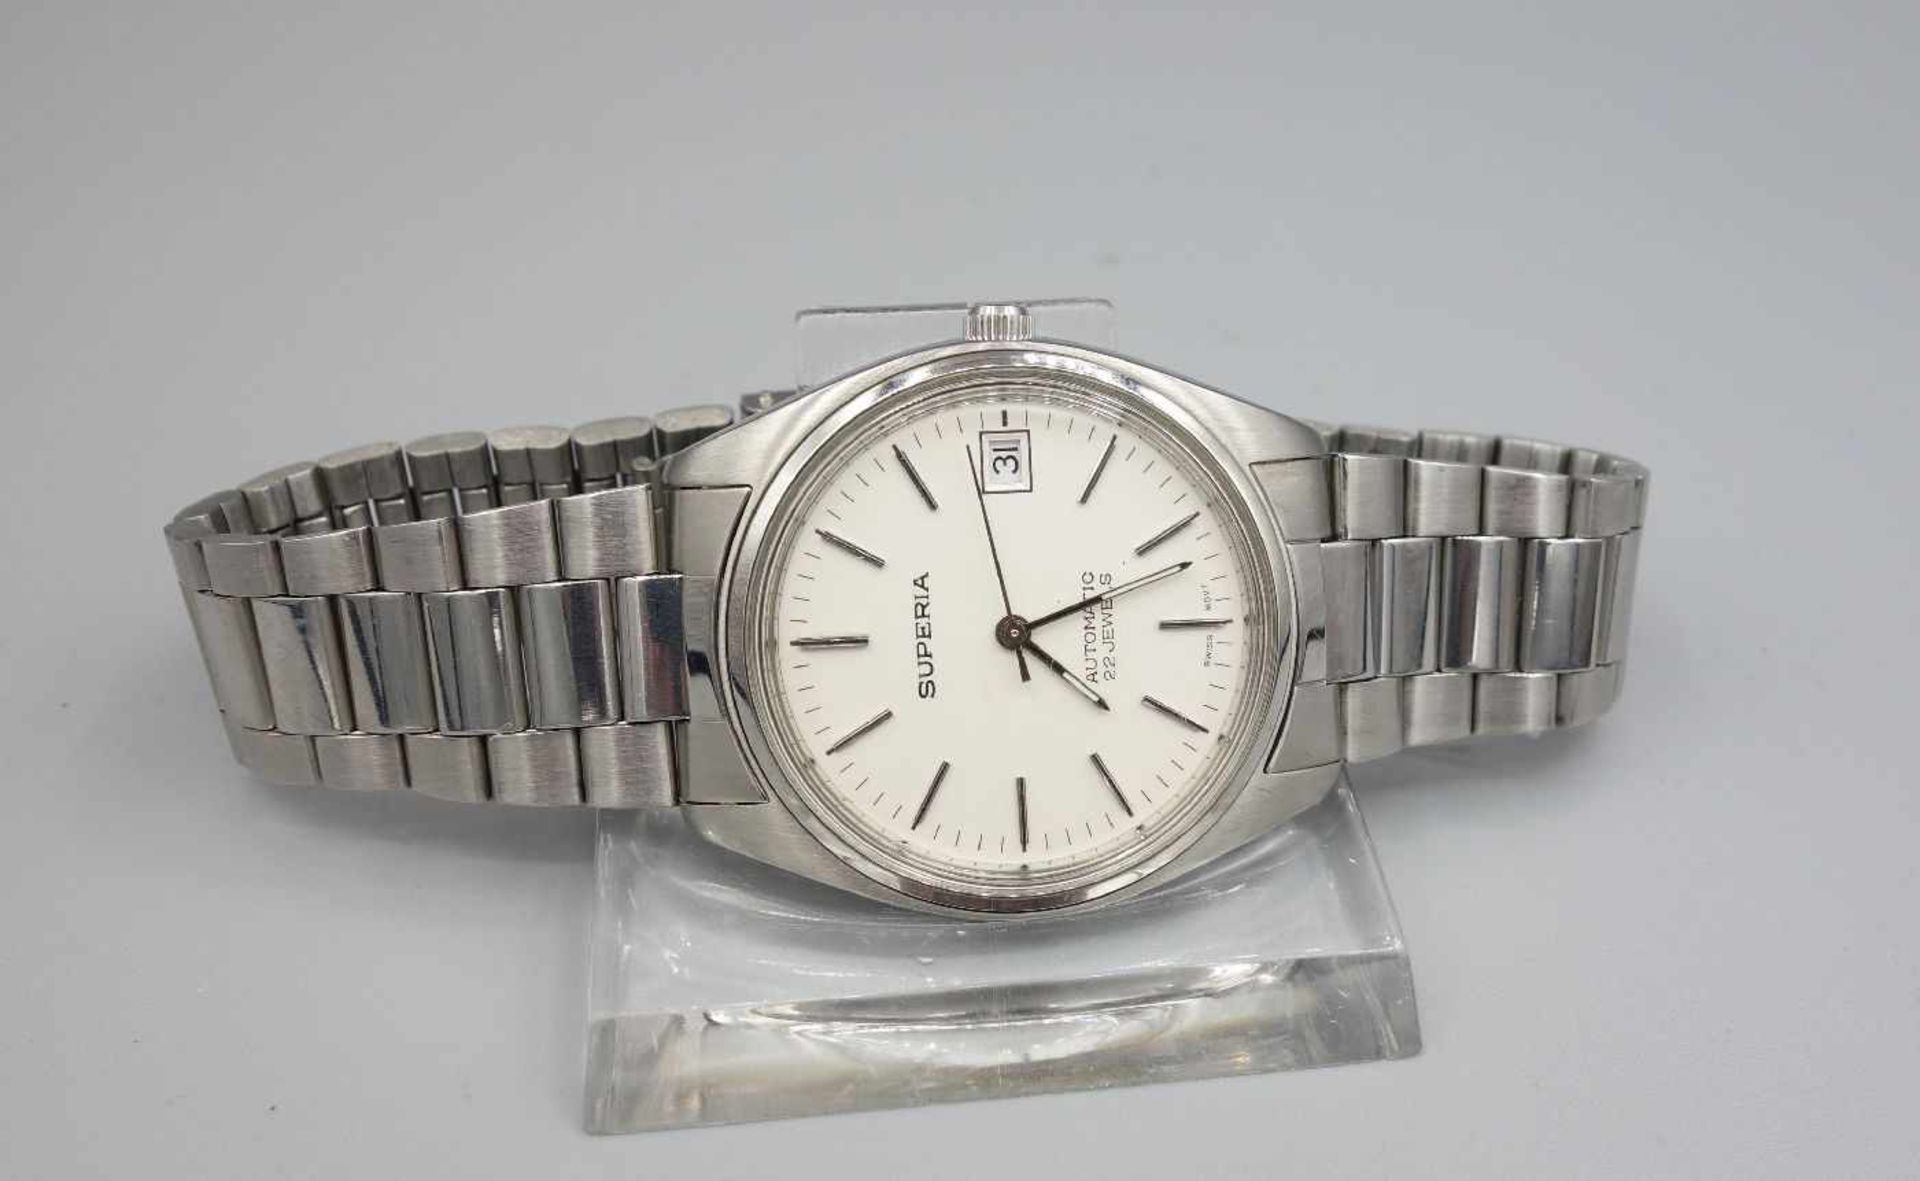 VITAGE ARMBANDUHR / wristwatch, 1980er Jahre, Automatik, rundes Edeltahlgehäuse an leichtem